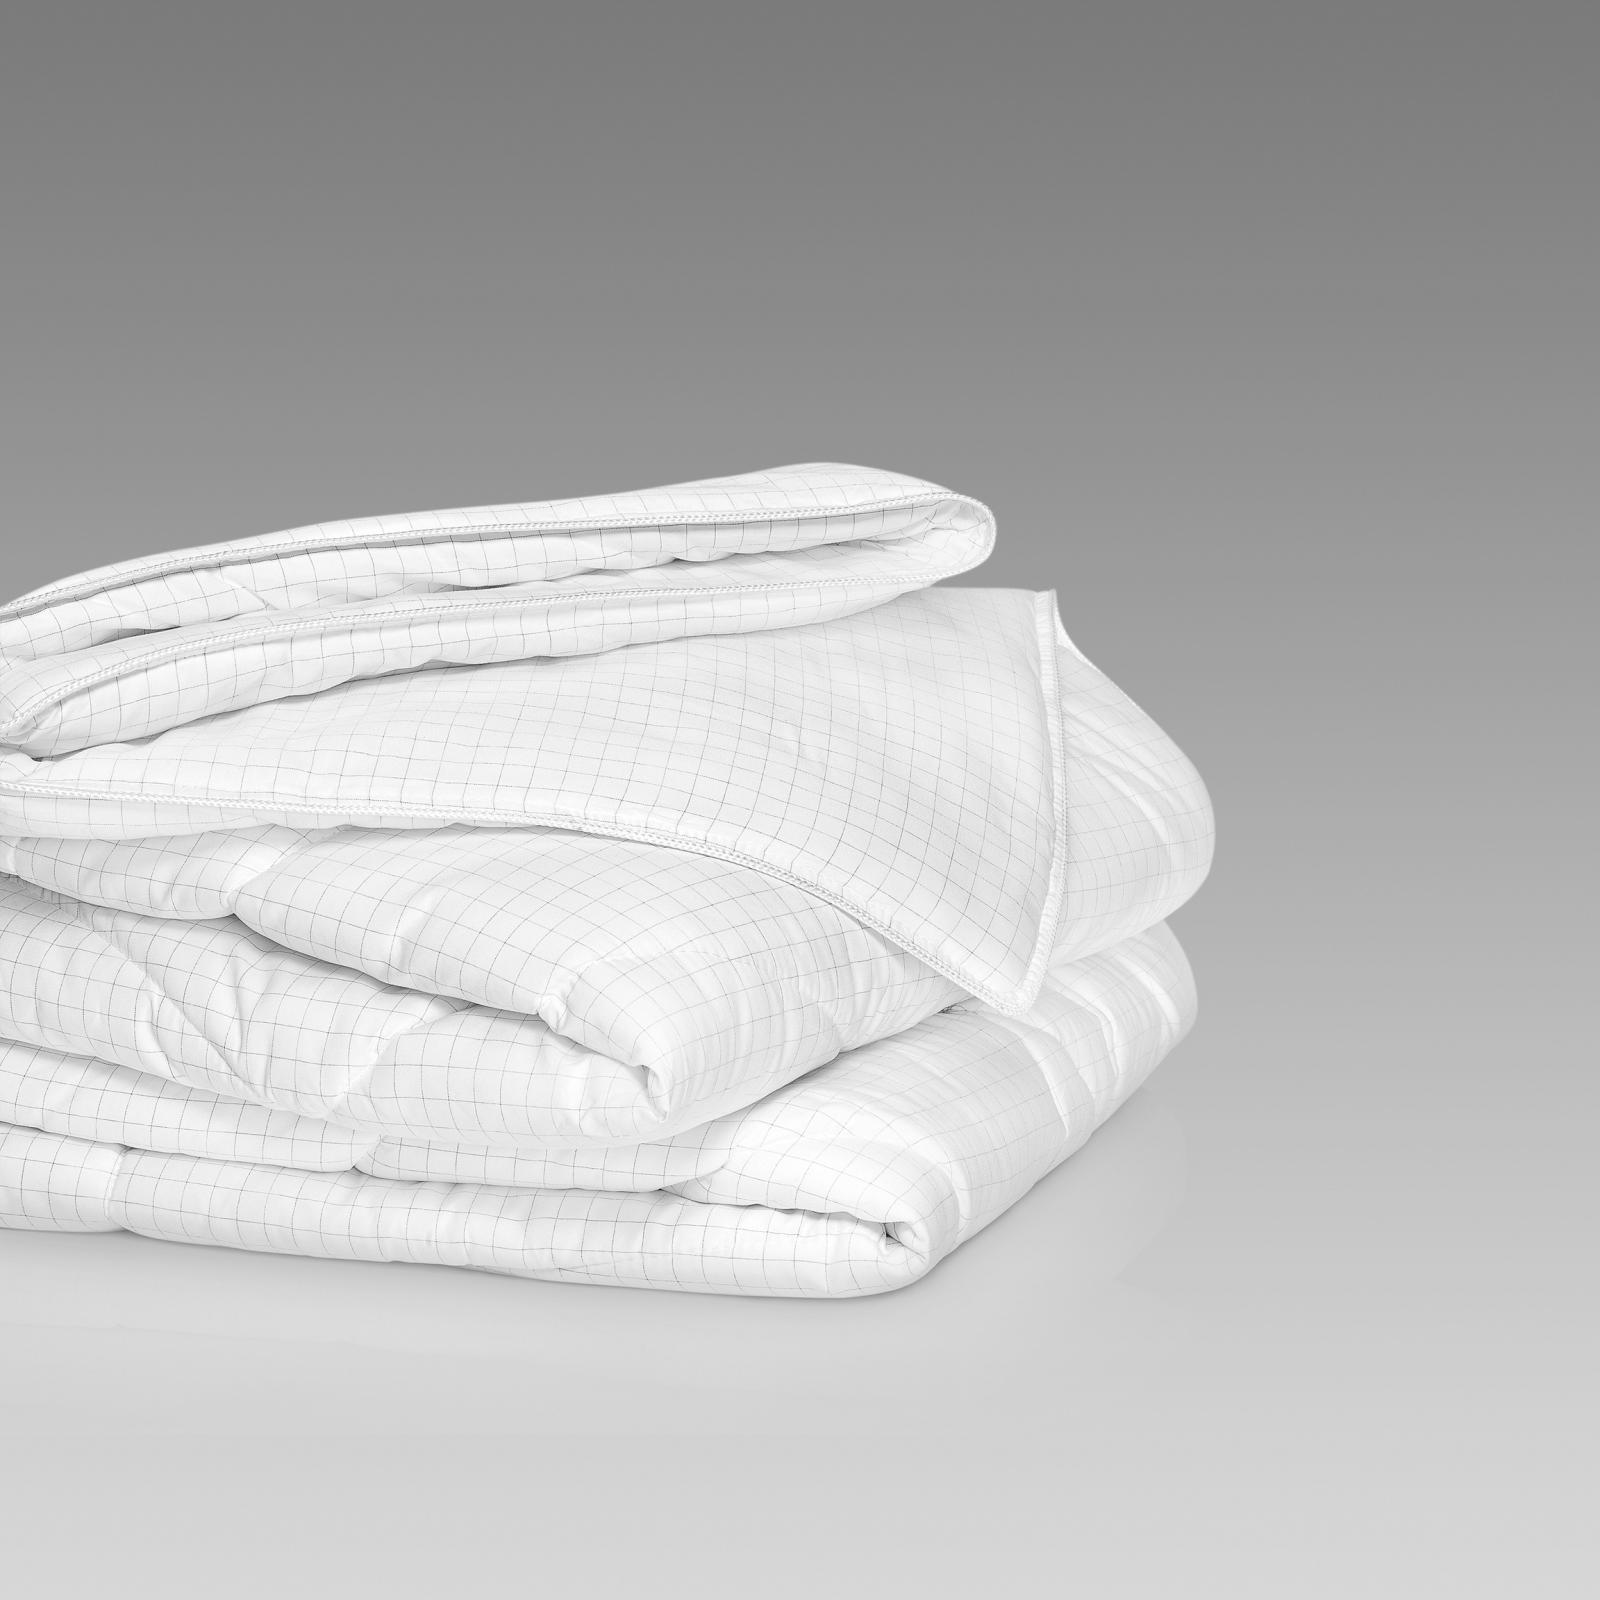 Одеяло Либра Togas 200х210, размер 200х210 см - фото 6